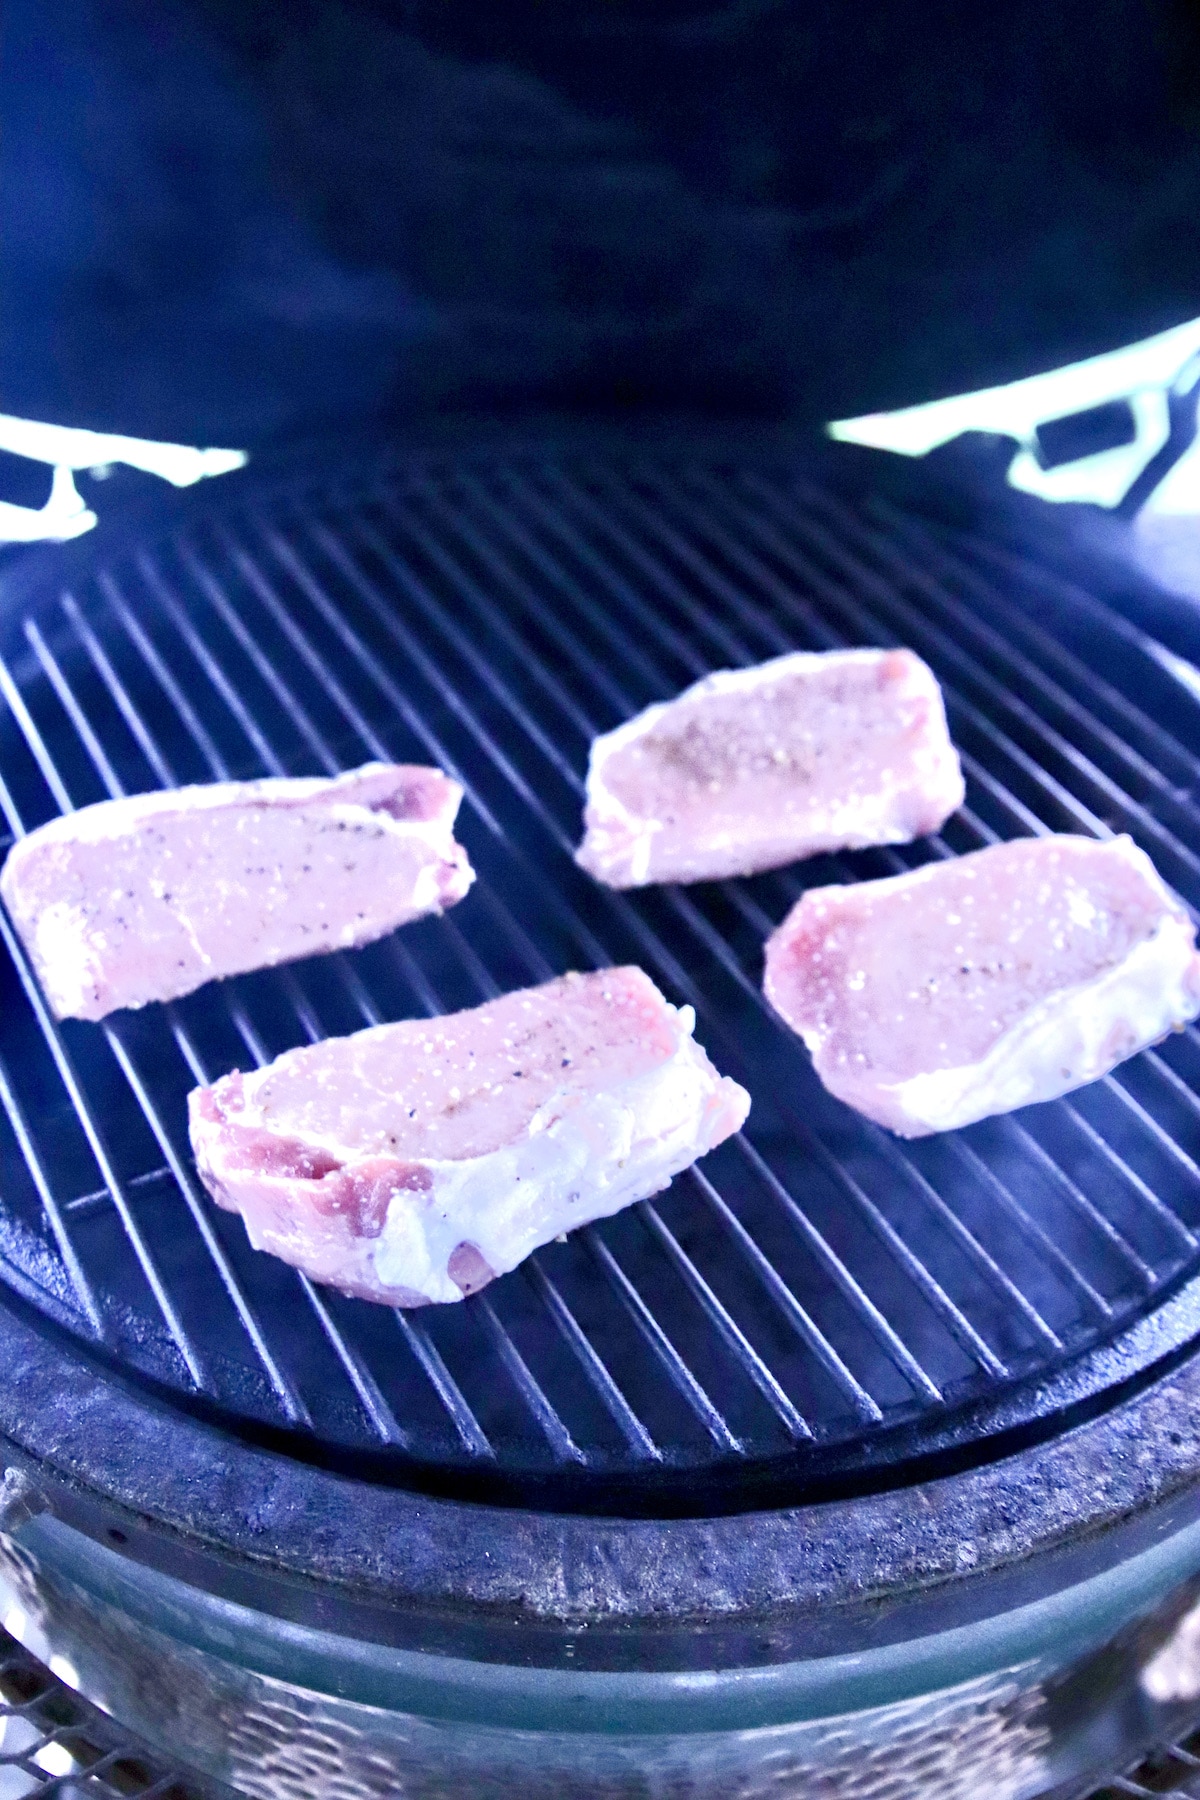 4 pork chops on a grill.